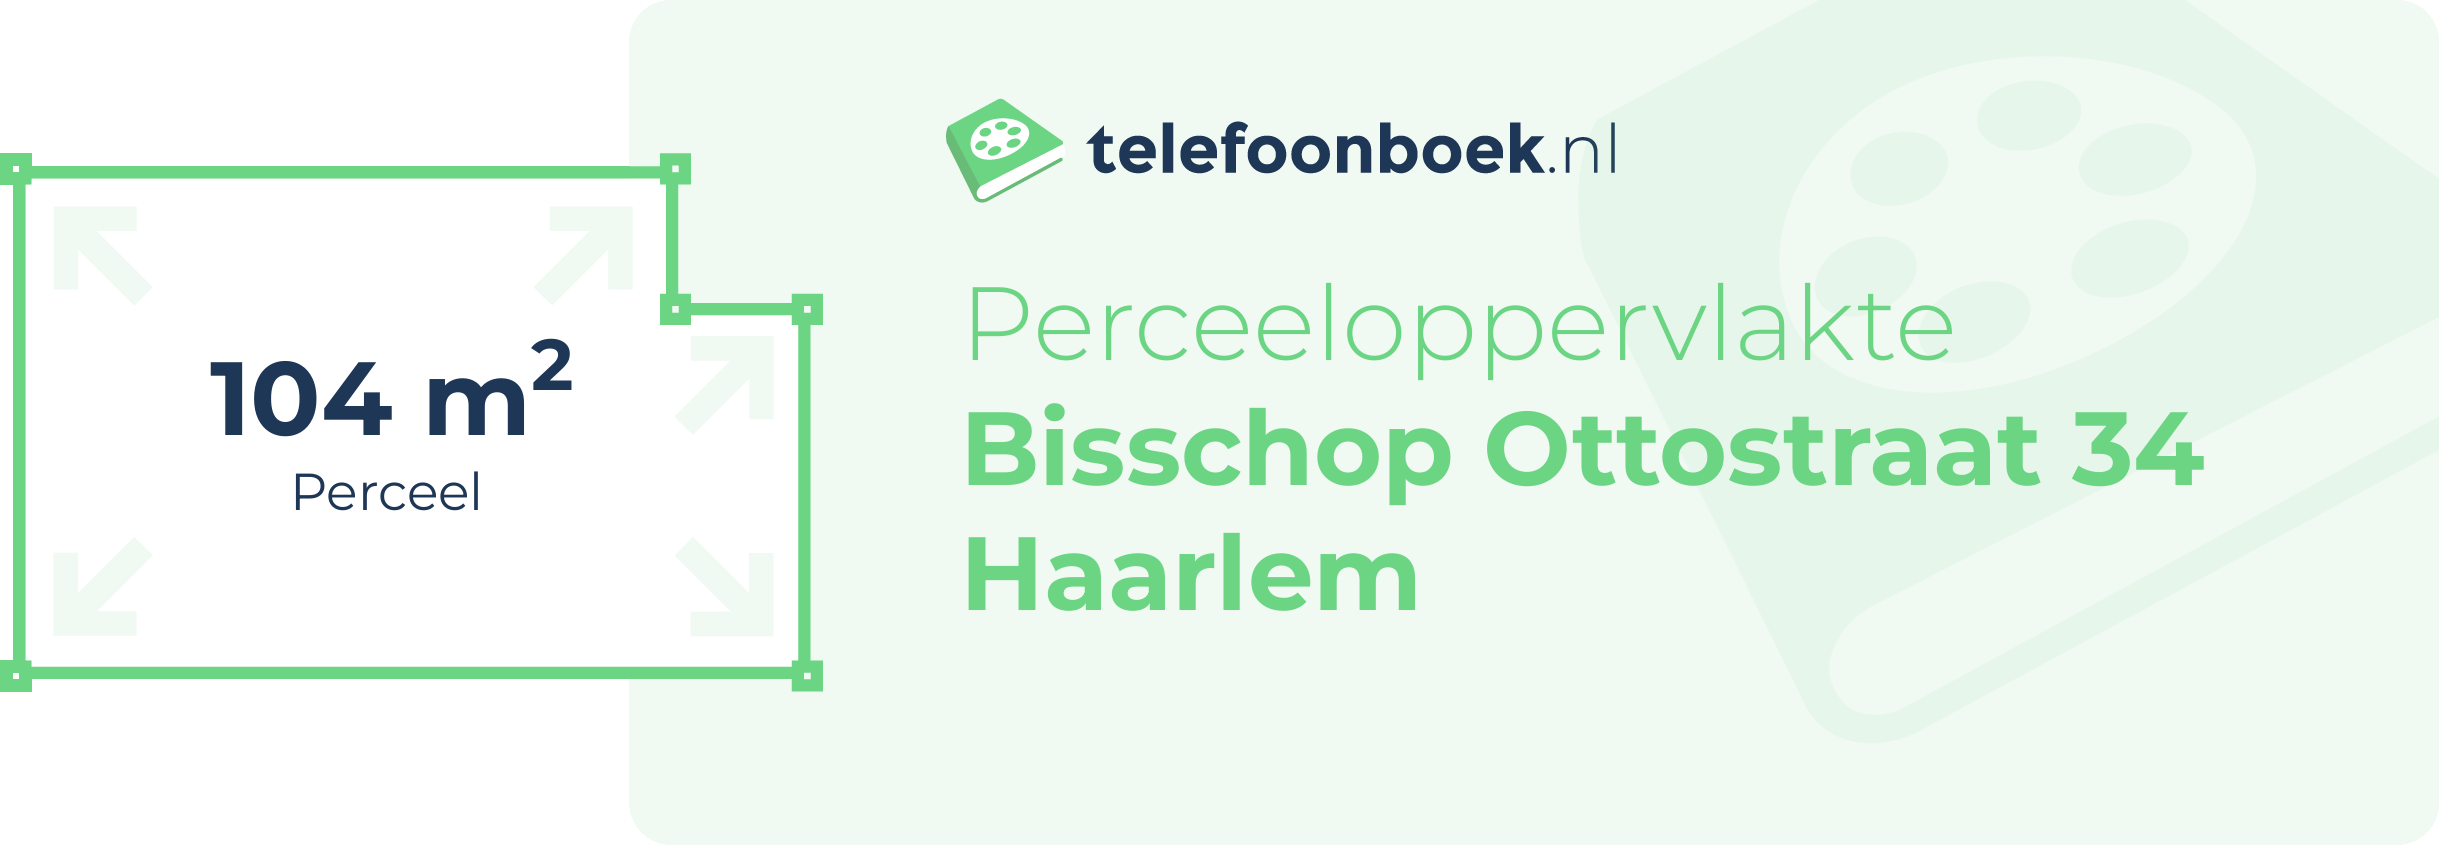 Perceeloppervlakte Bisschop Ottostraat 34 Haarlem